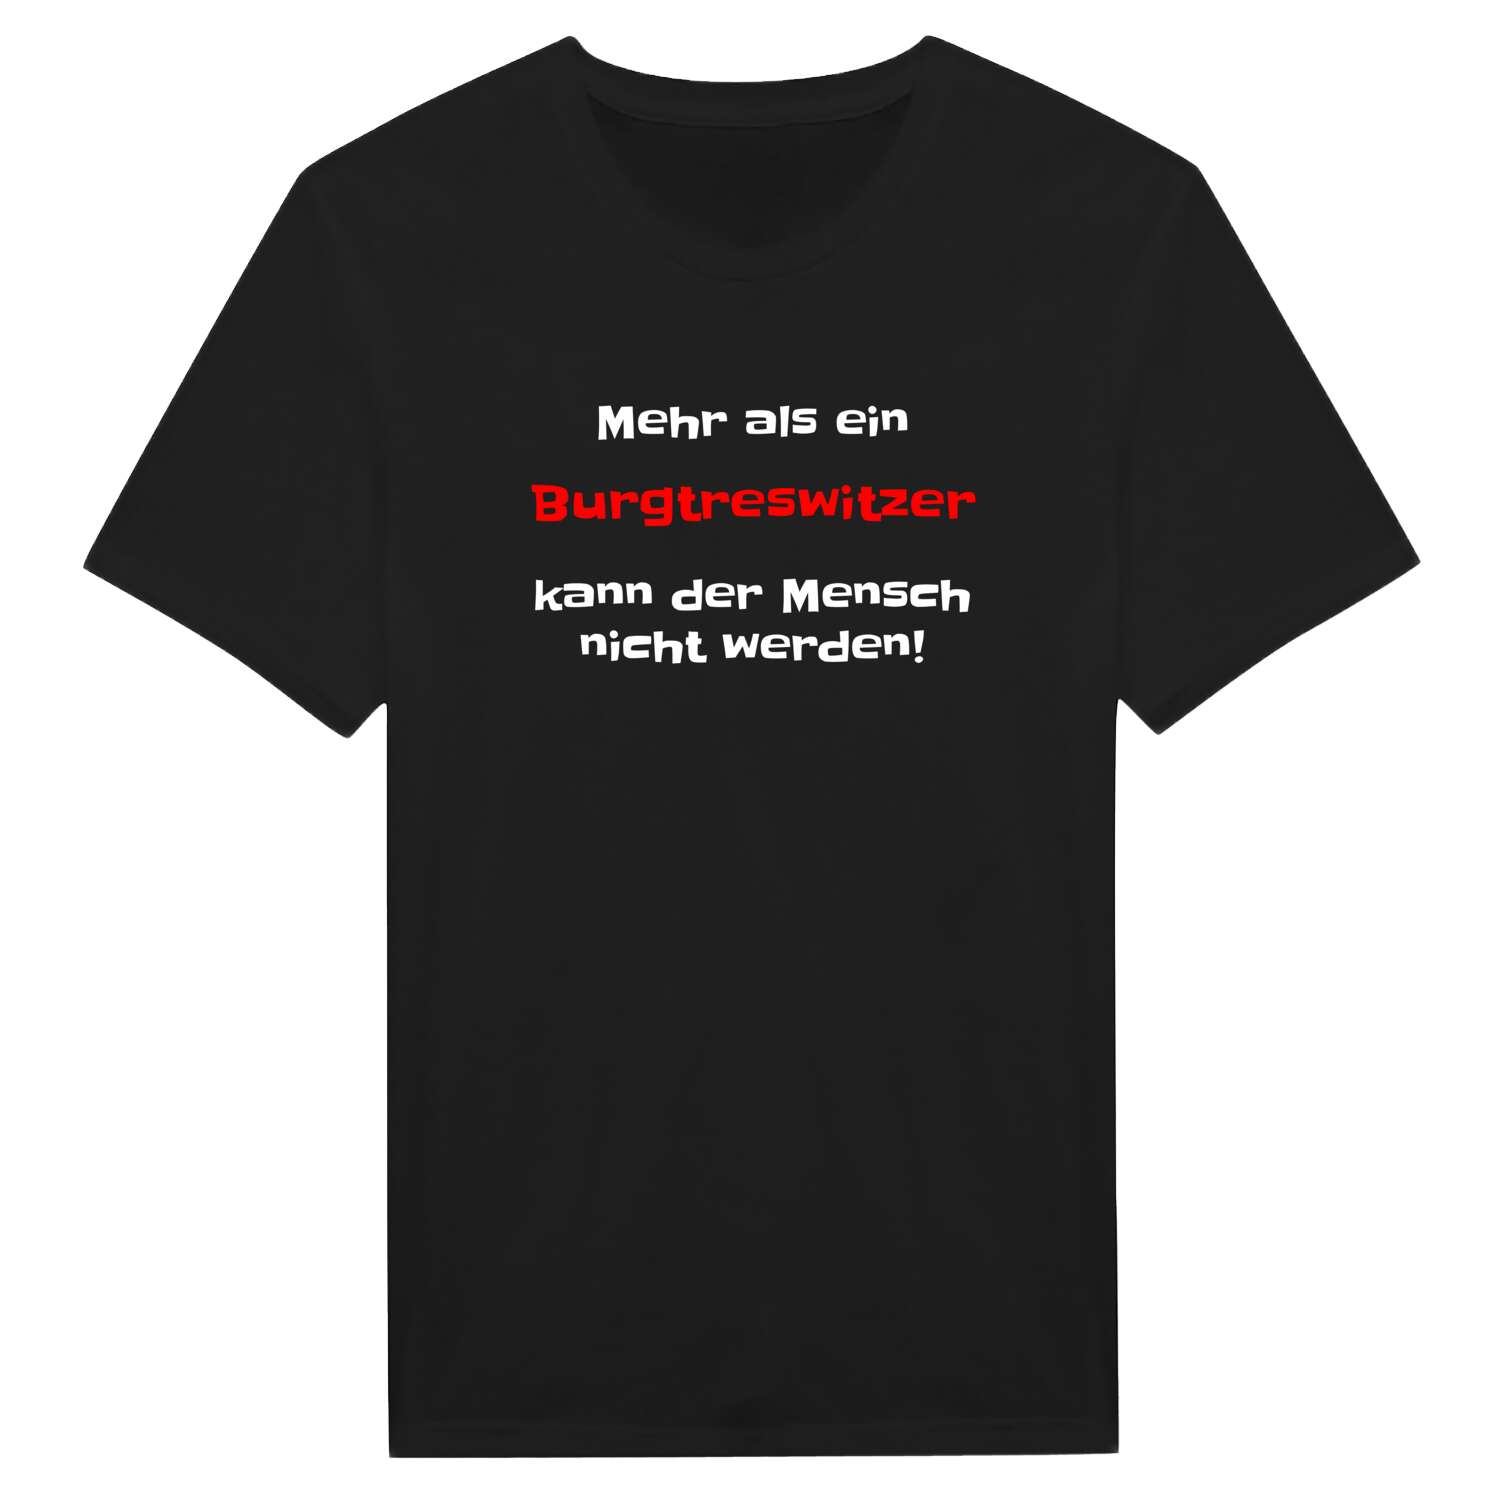 Burgtreswitz T-Shirt »Mehr als ein«